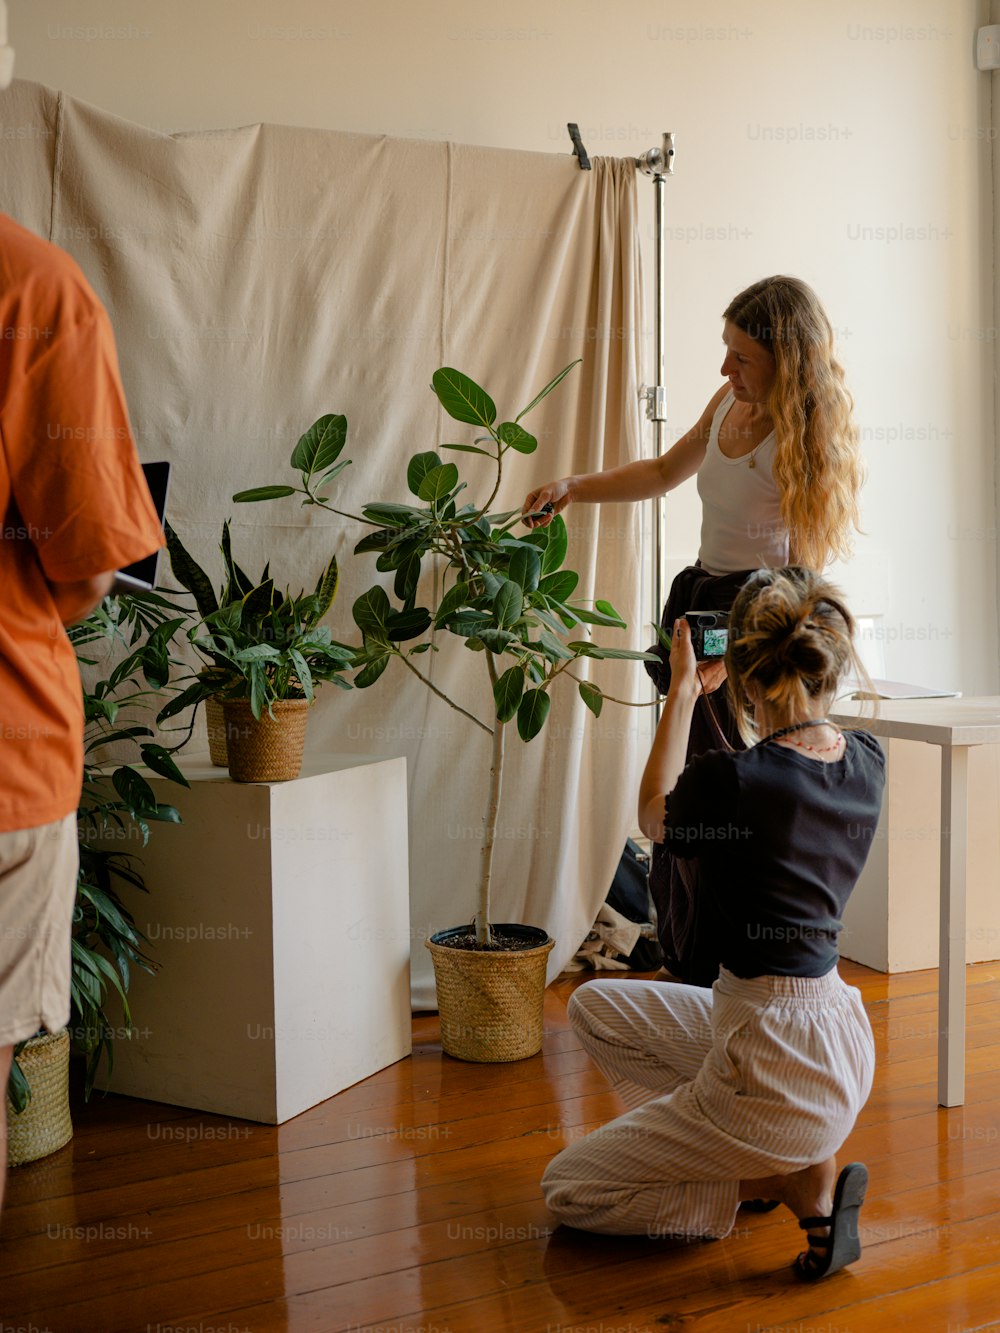 Une femme prend une photo d’une plante en pot